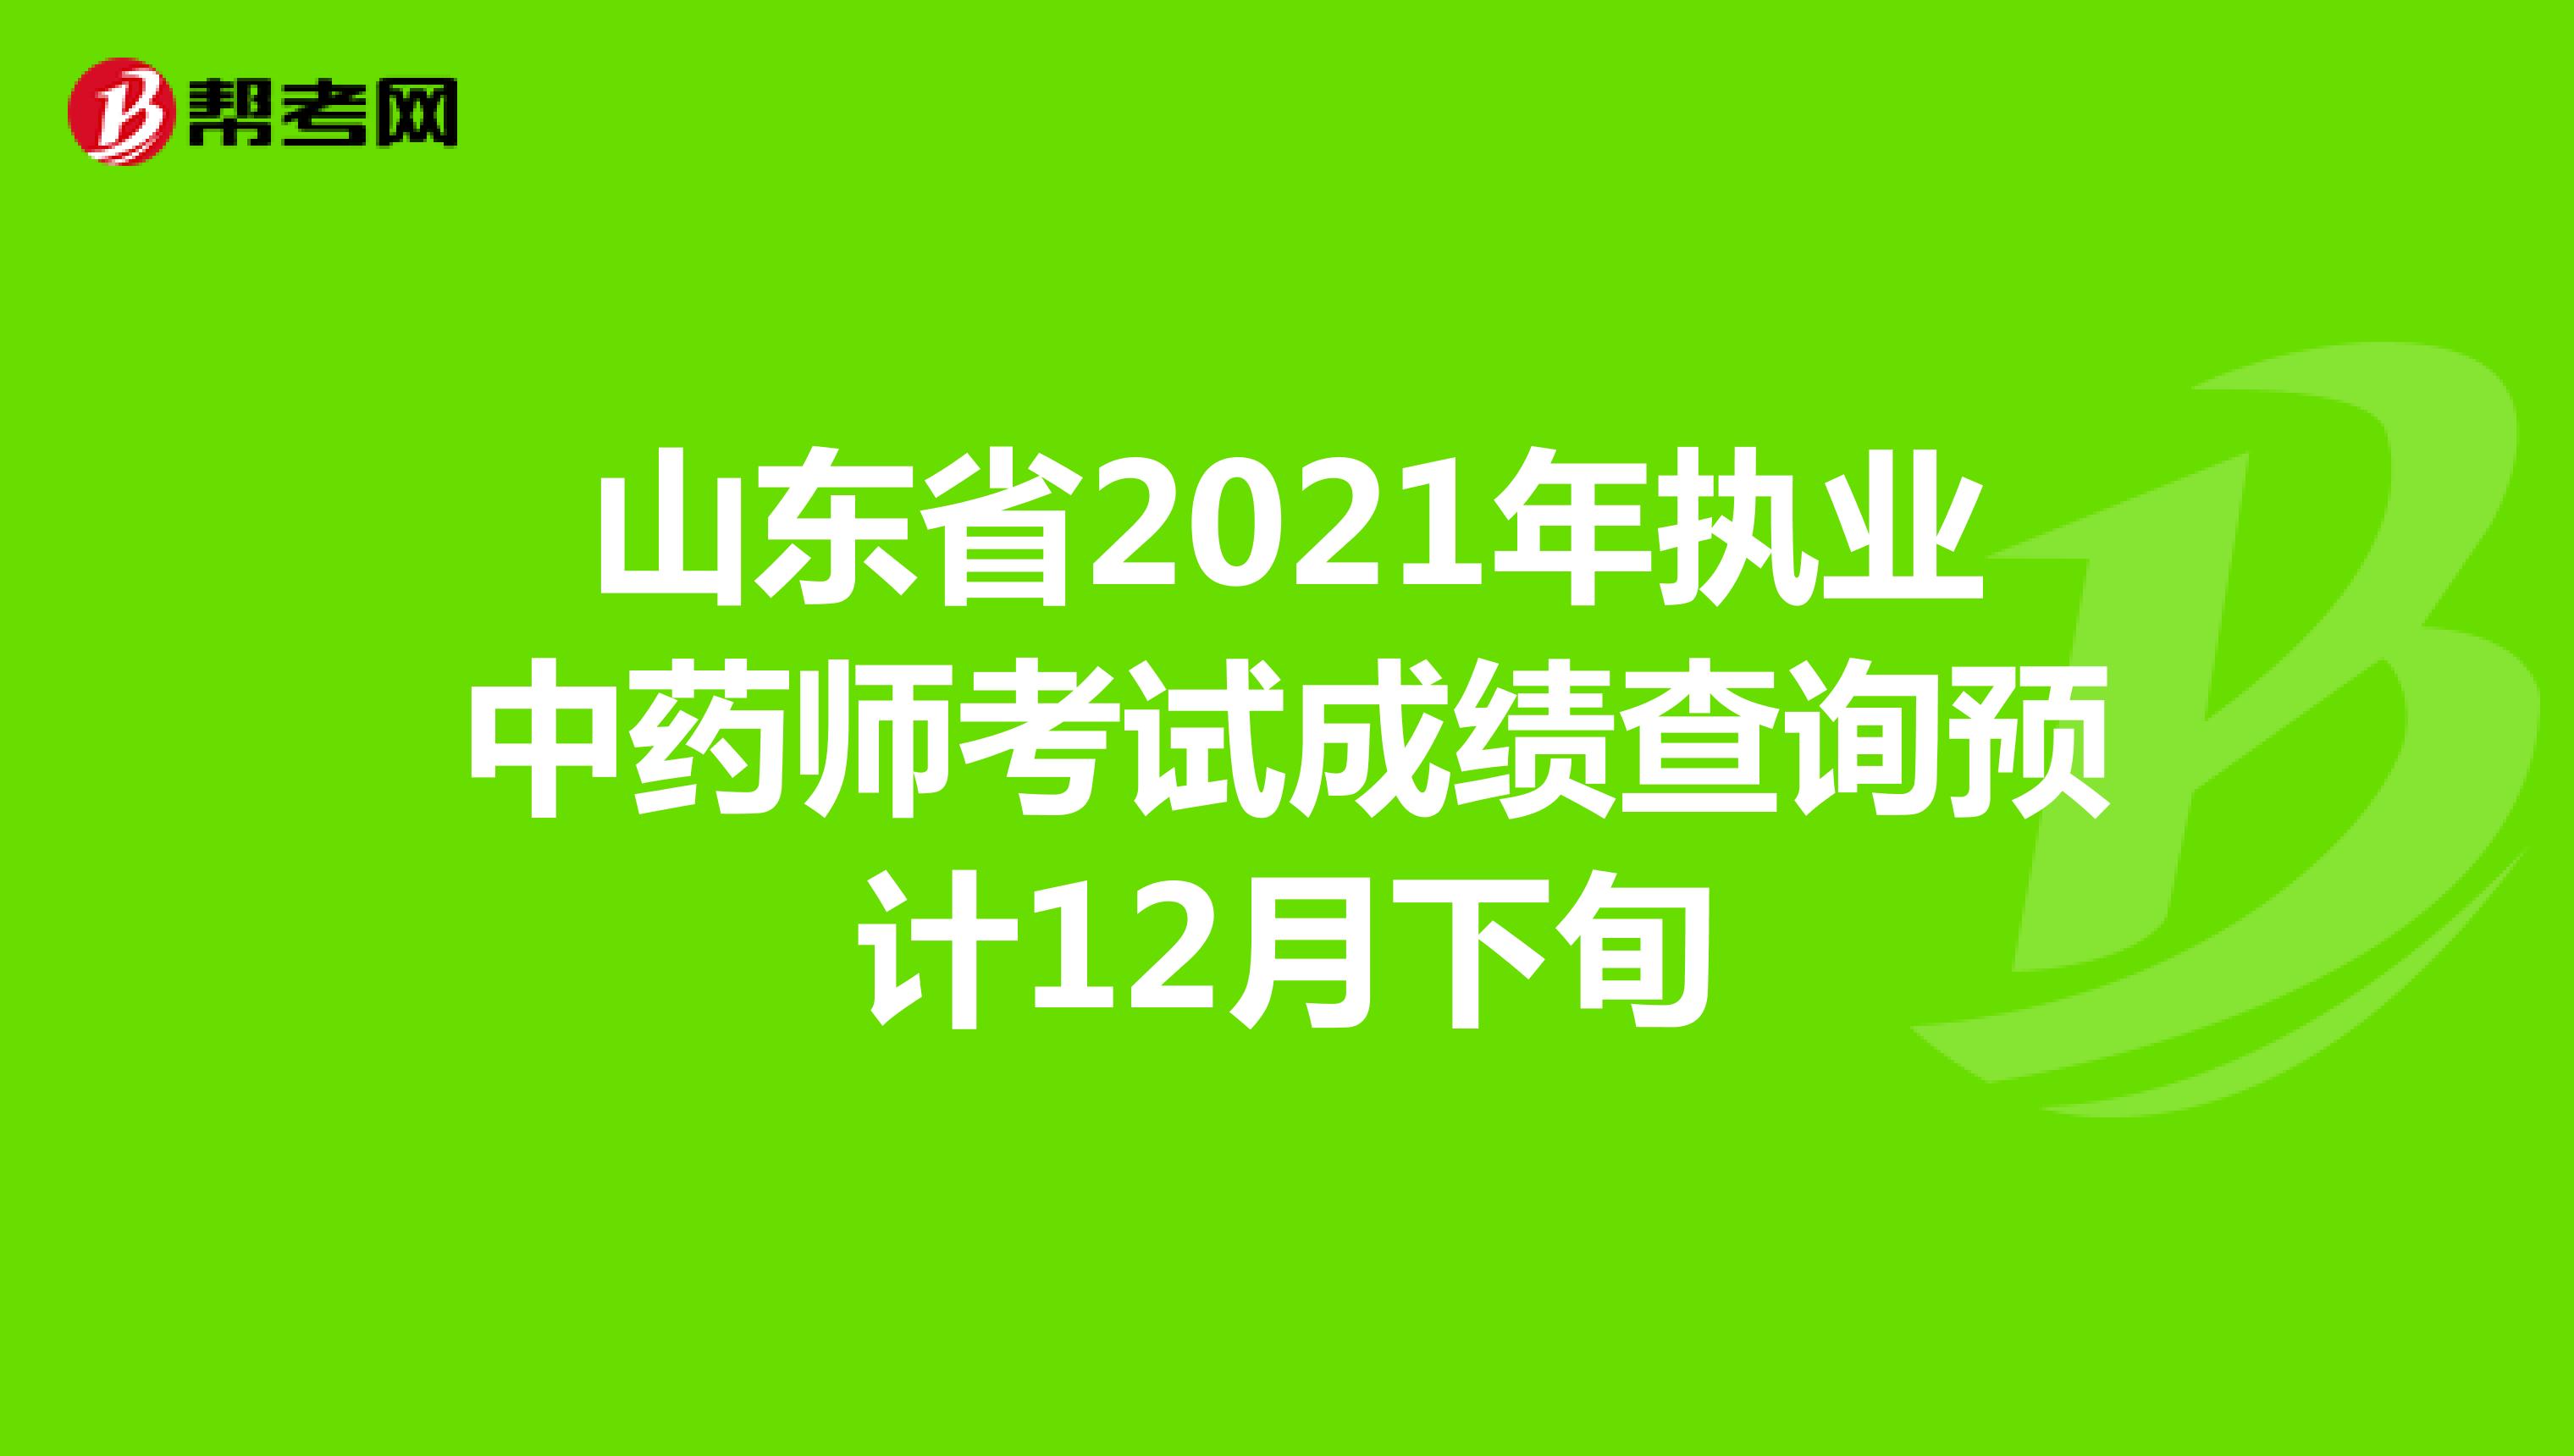 山东省2021年执业中药师考试成绩查询预计12月下旬